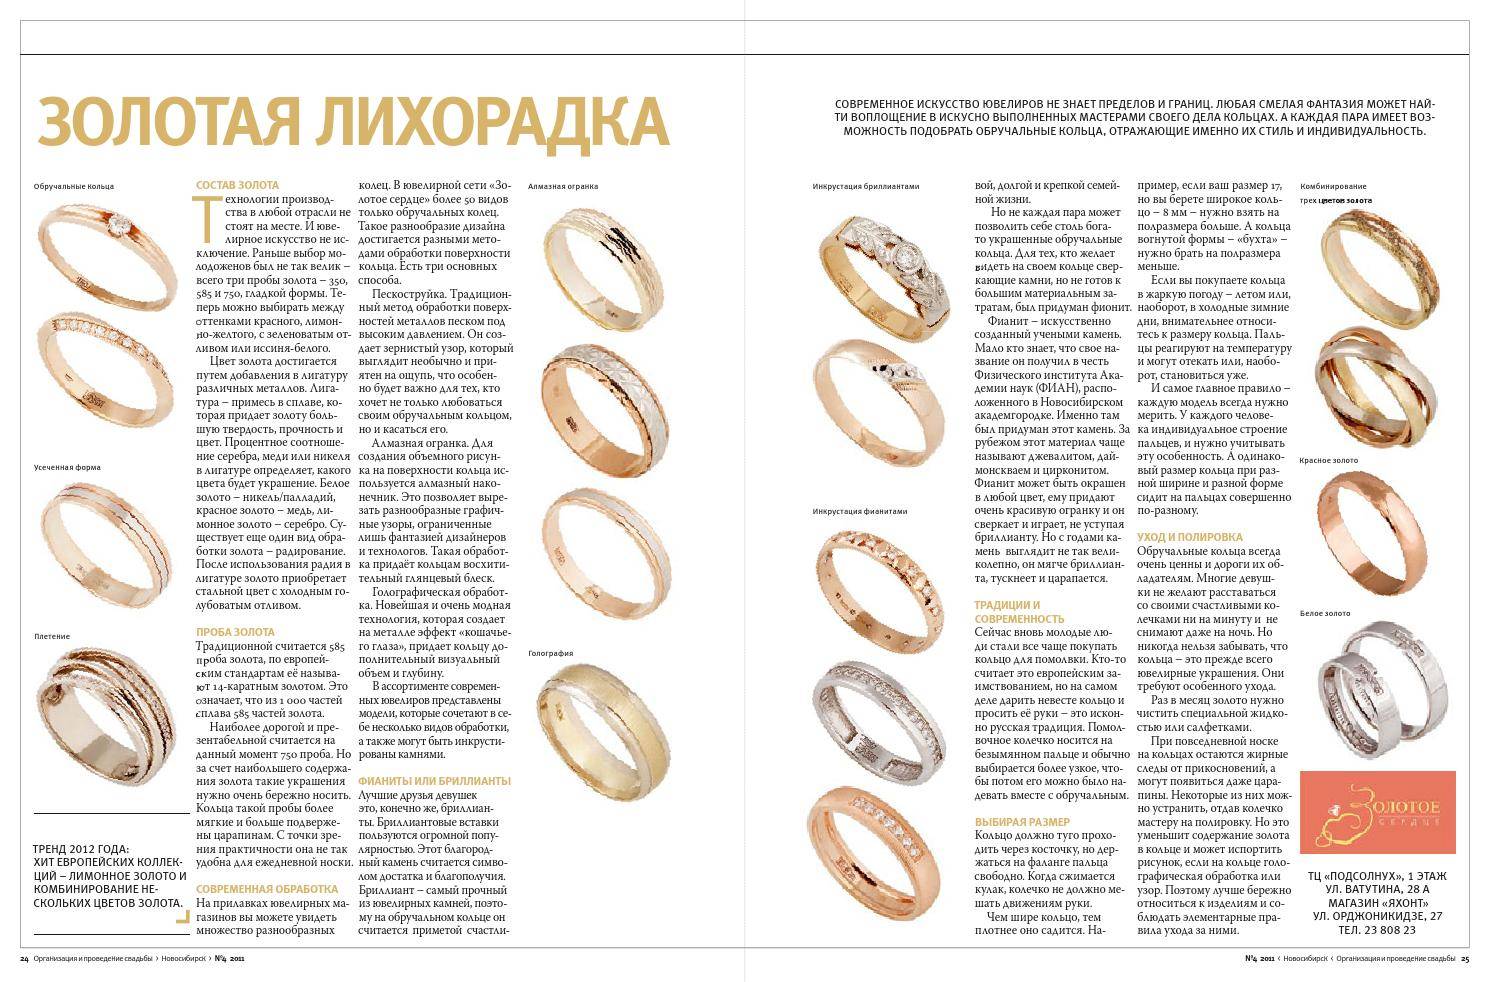 Выбор обручальных колец – рекомендации, и советы как выбрать кольца на свадьбу